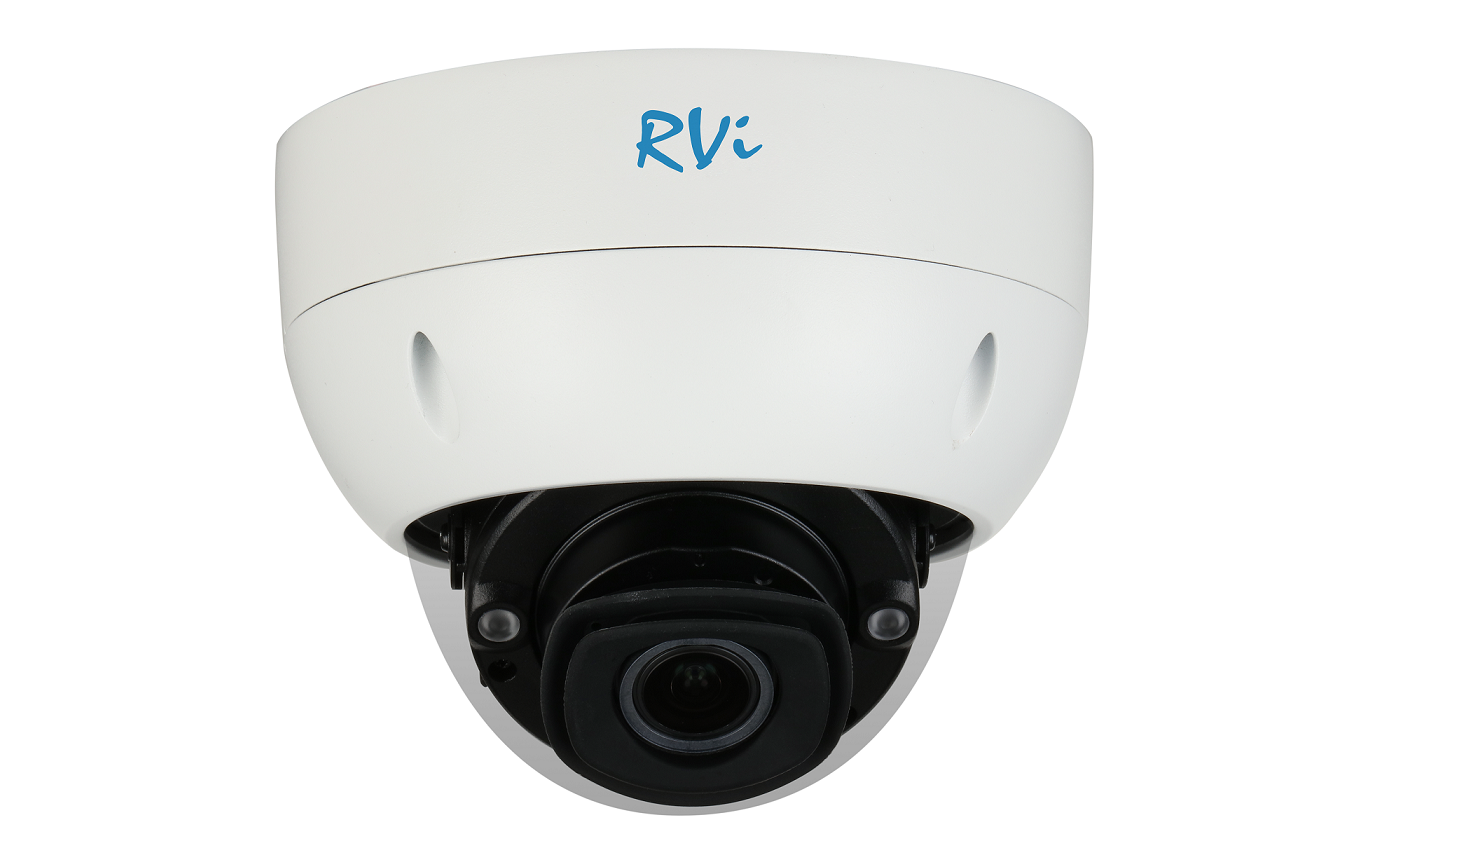 RVi-1NCD4469 (2.7-12) - купить в интернет магазине с доставкой, цены, описание, характеристики, отзывы